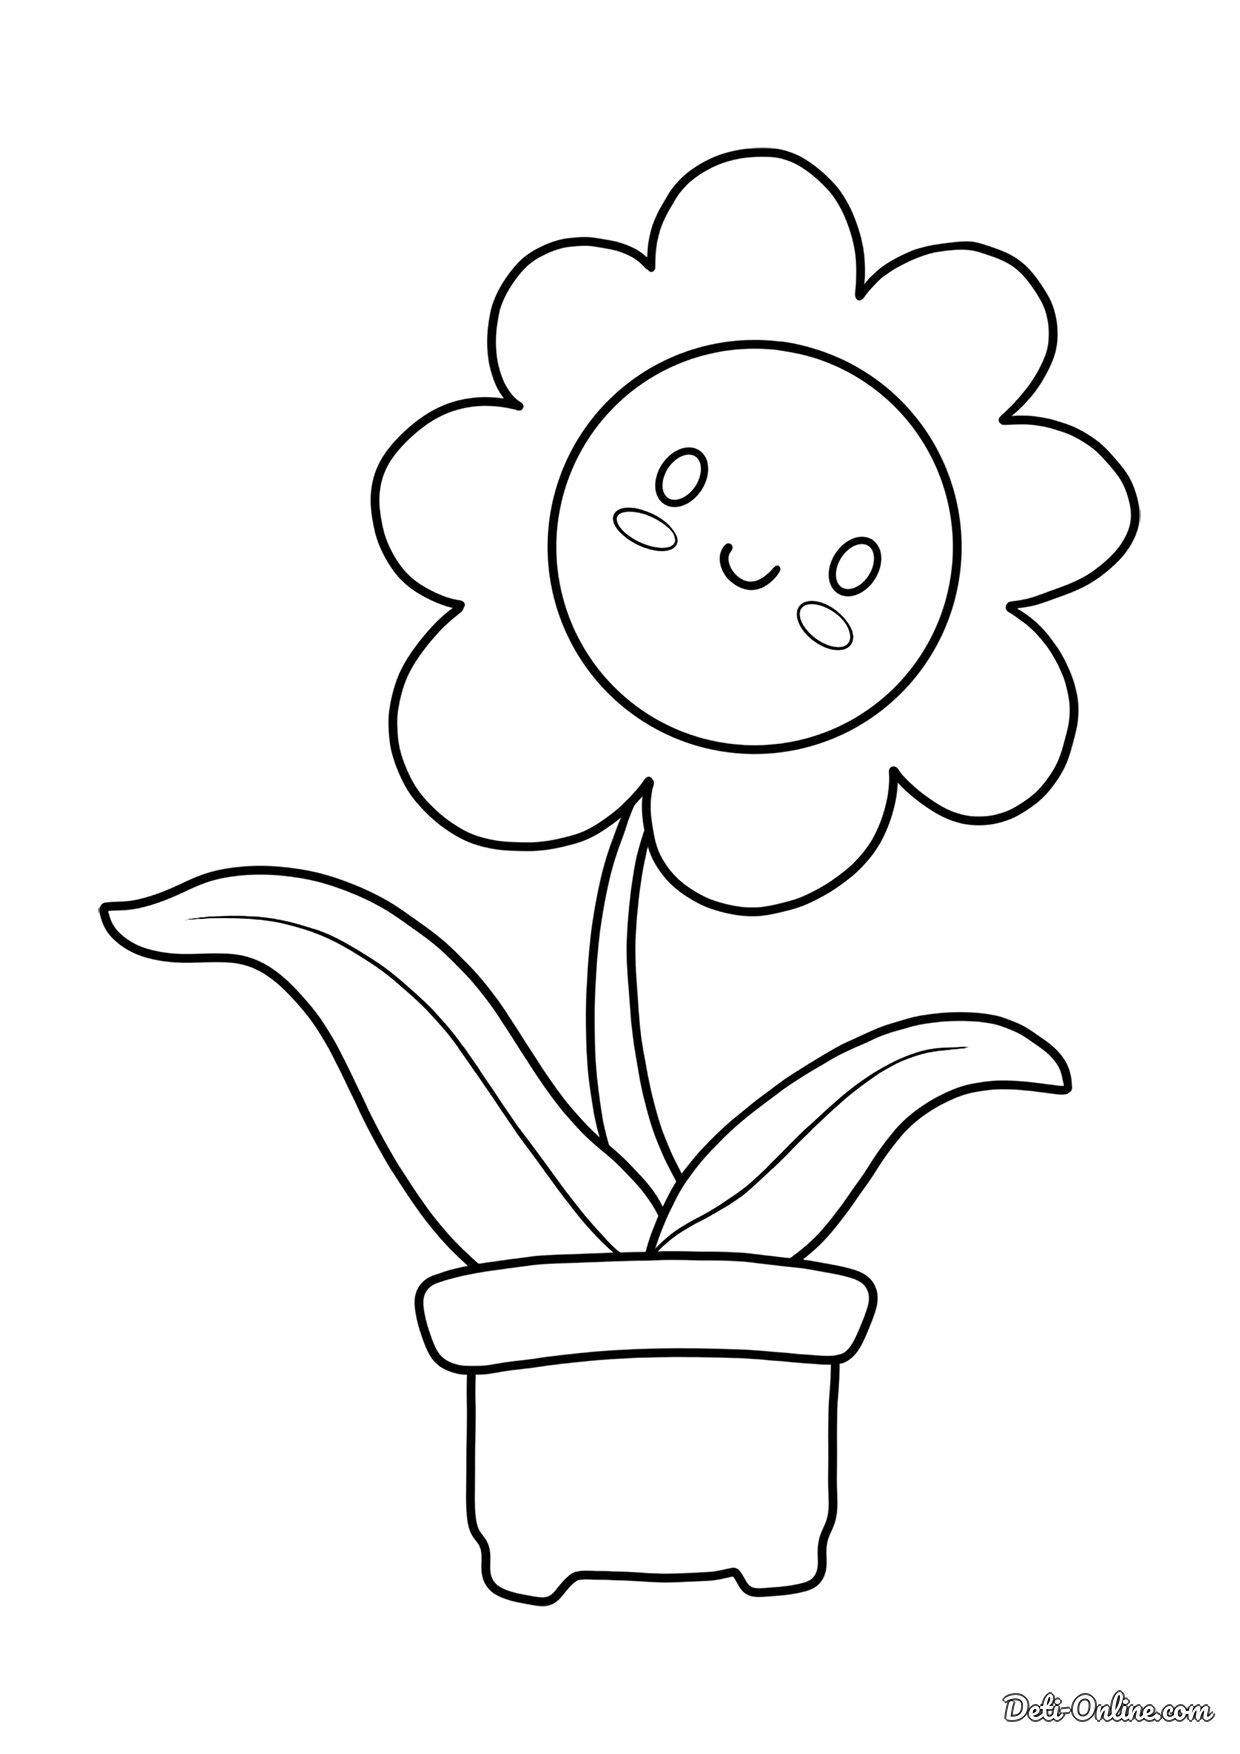 Раскраска Простой цветочек в горшочке | распечатать раскраски для детей